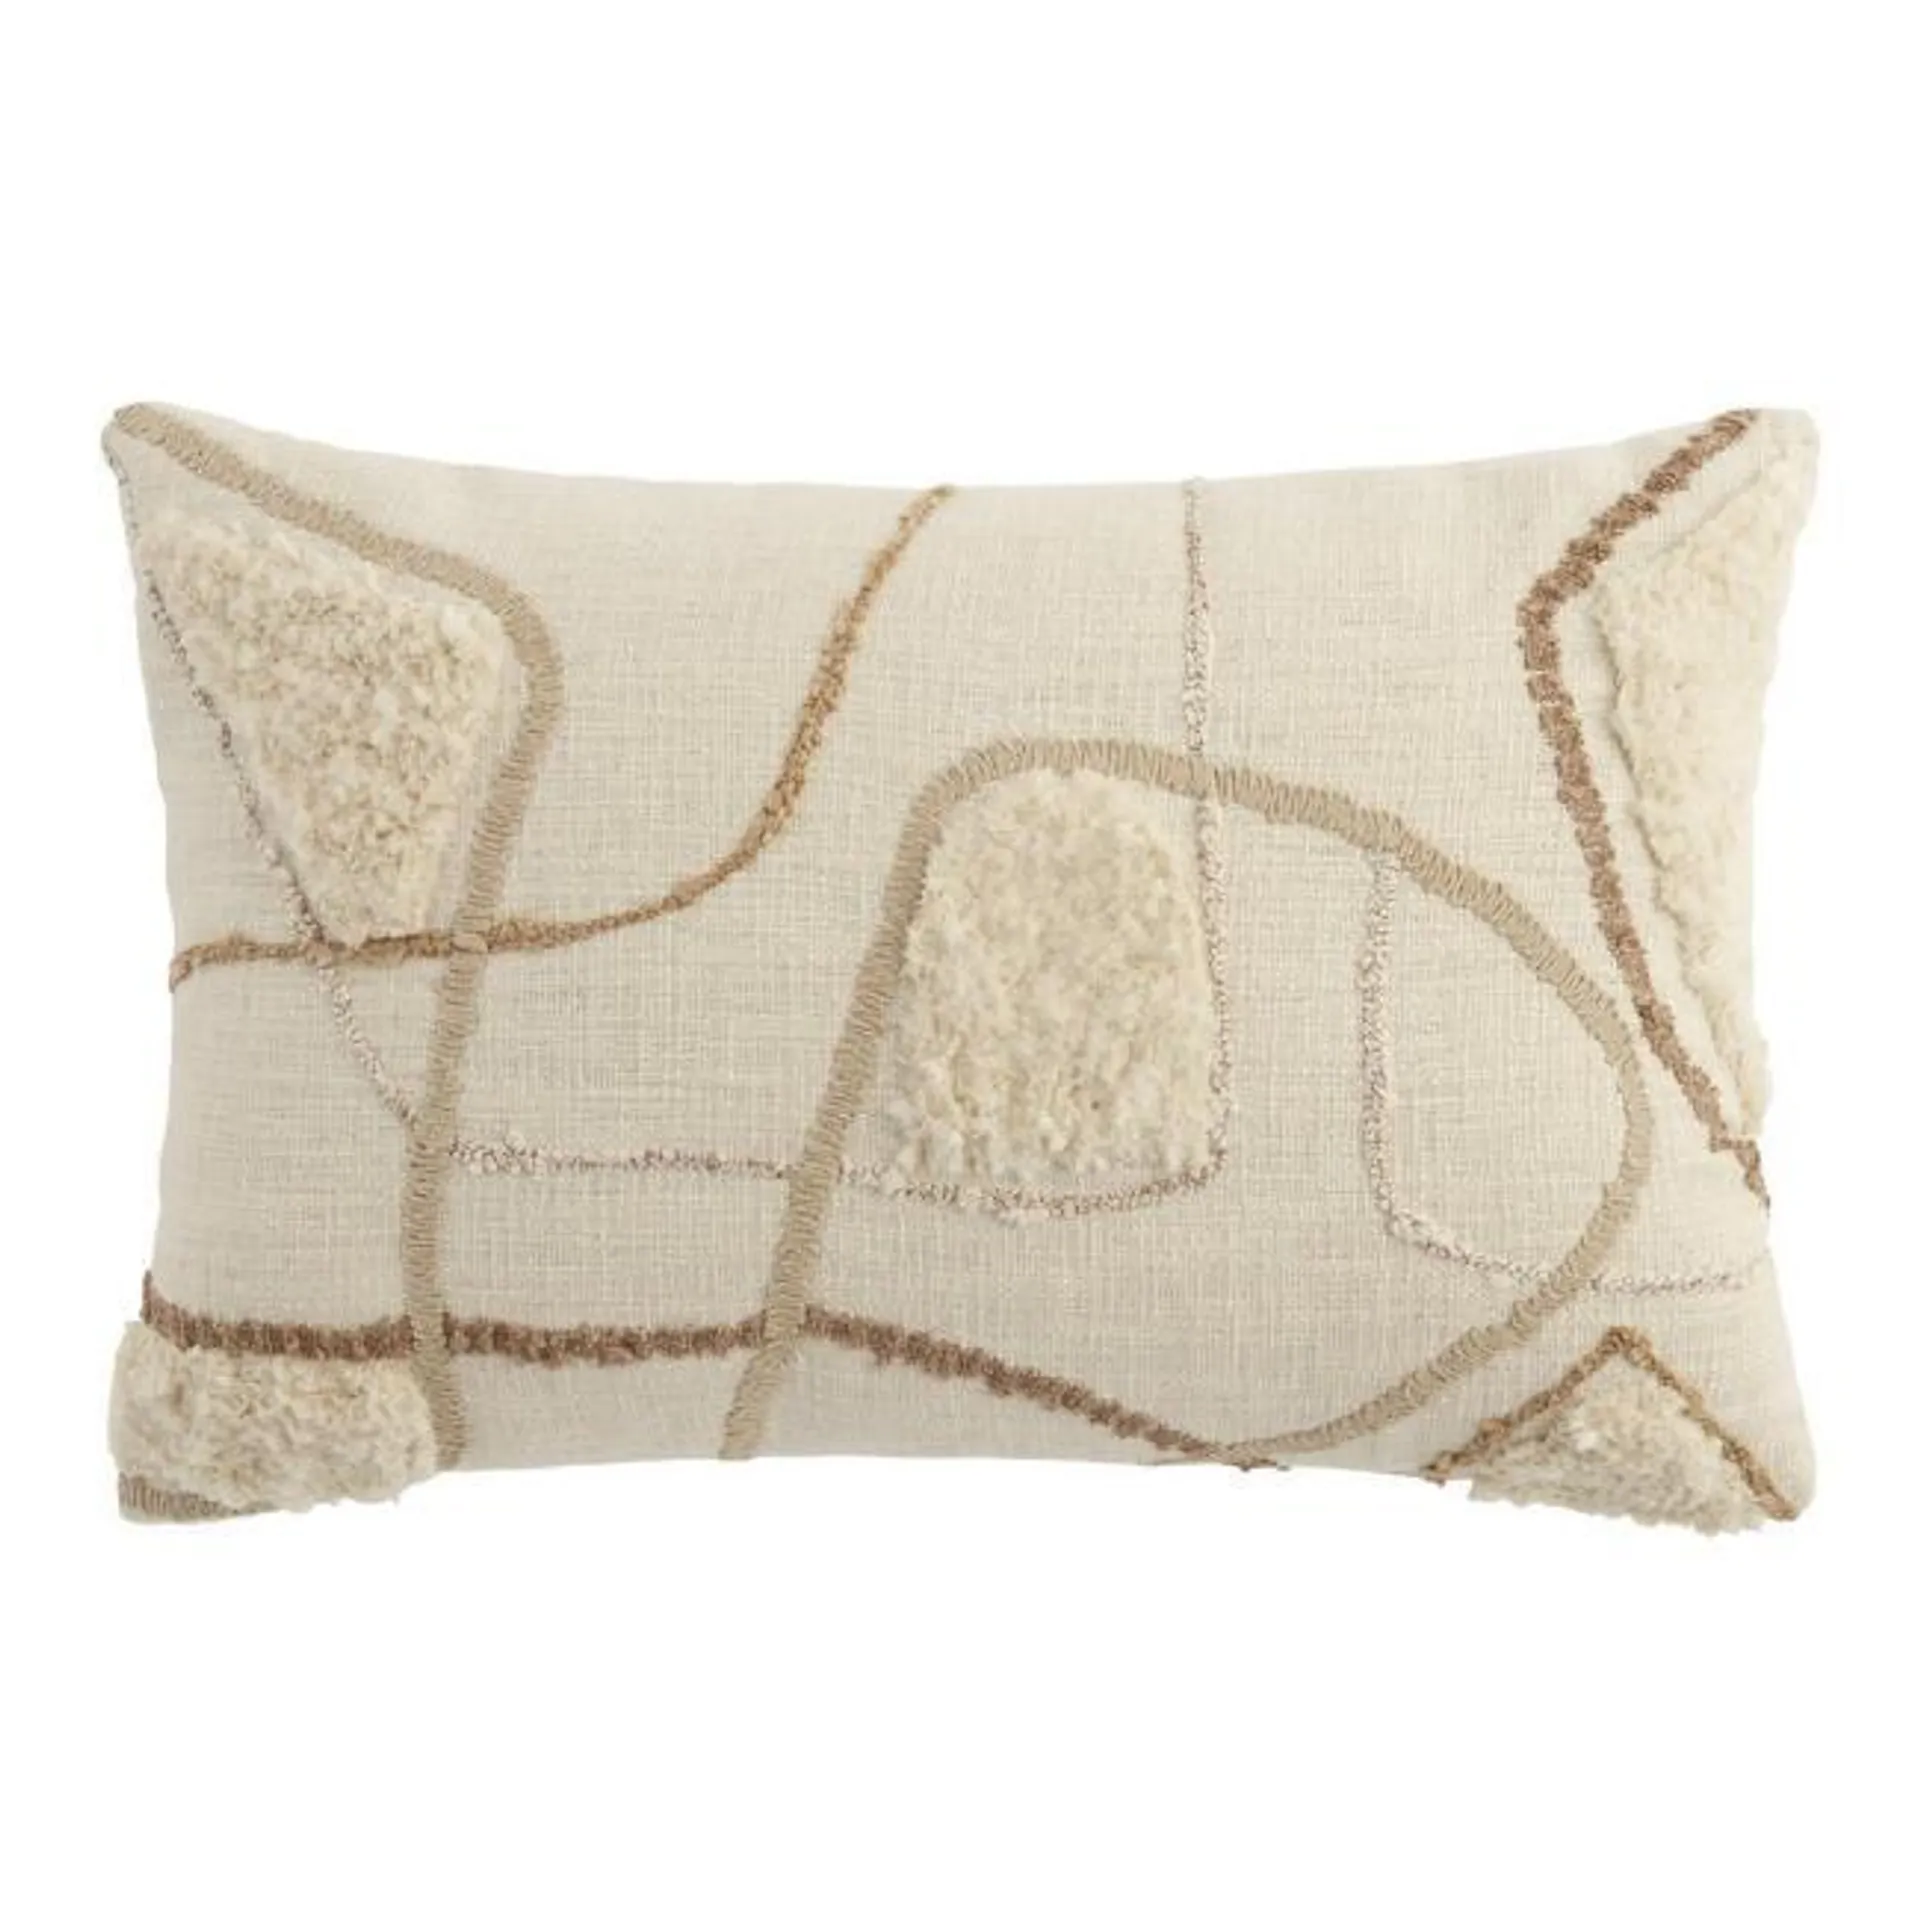 Embroidered Contoured Line Lumbar Pillow